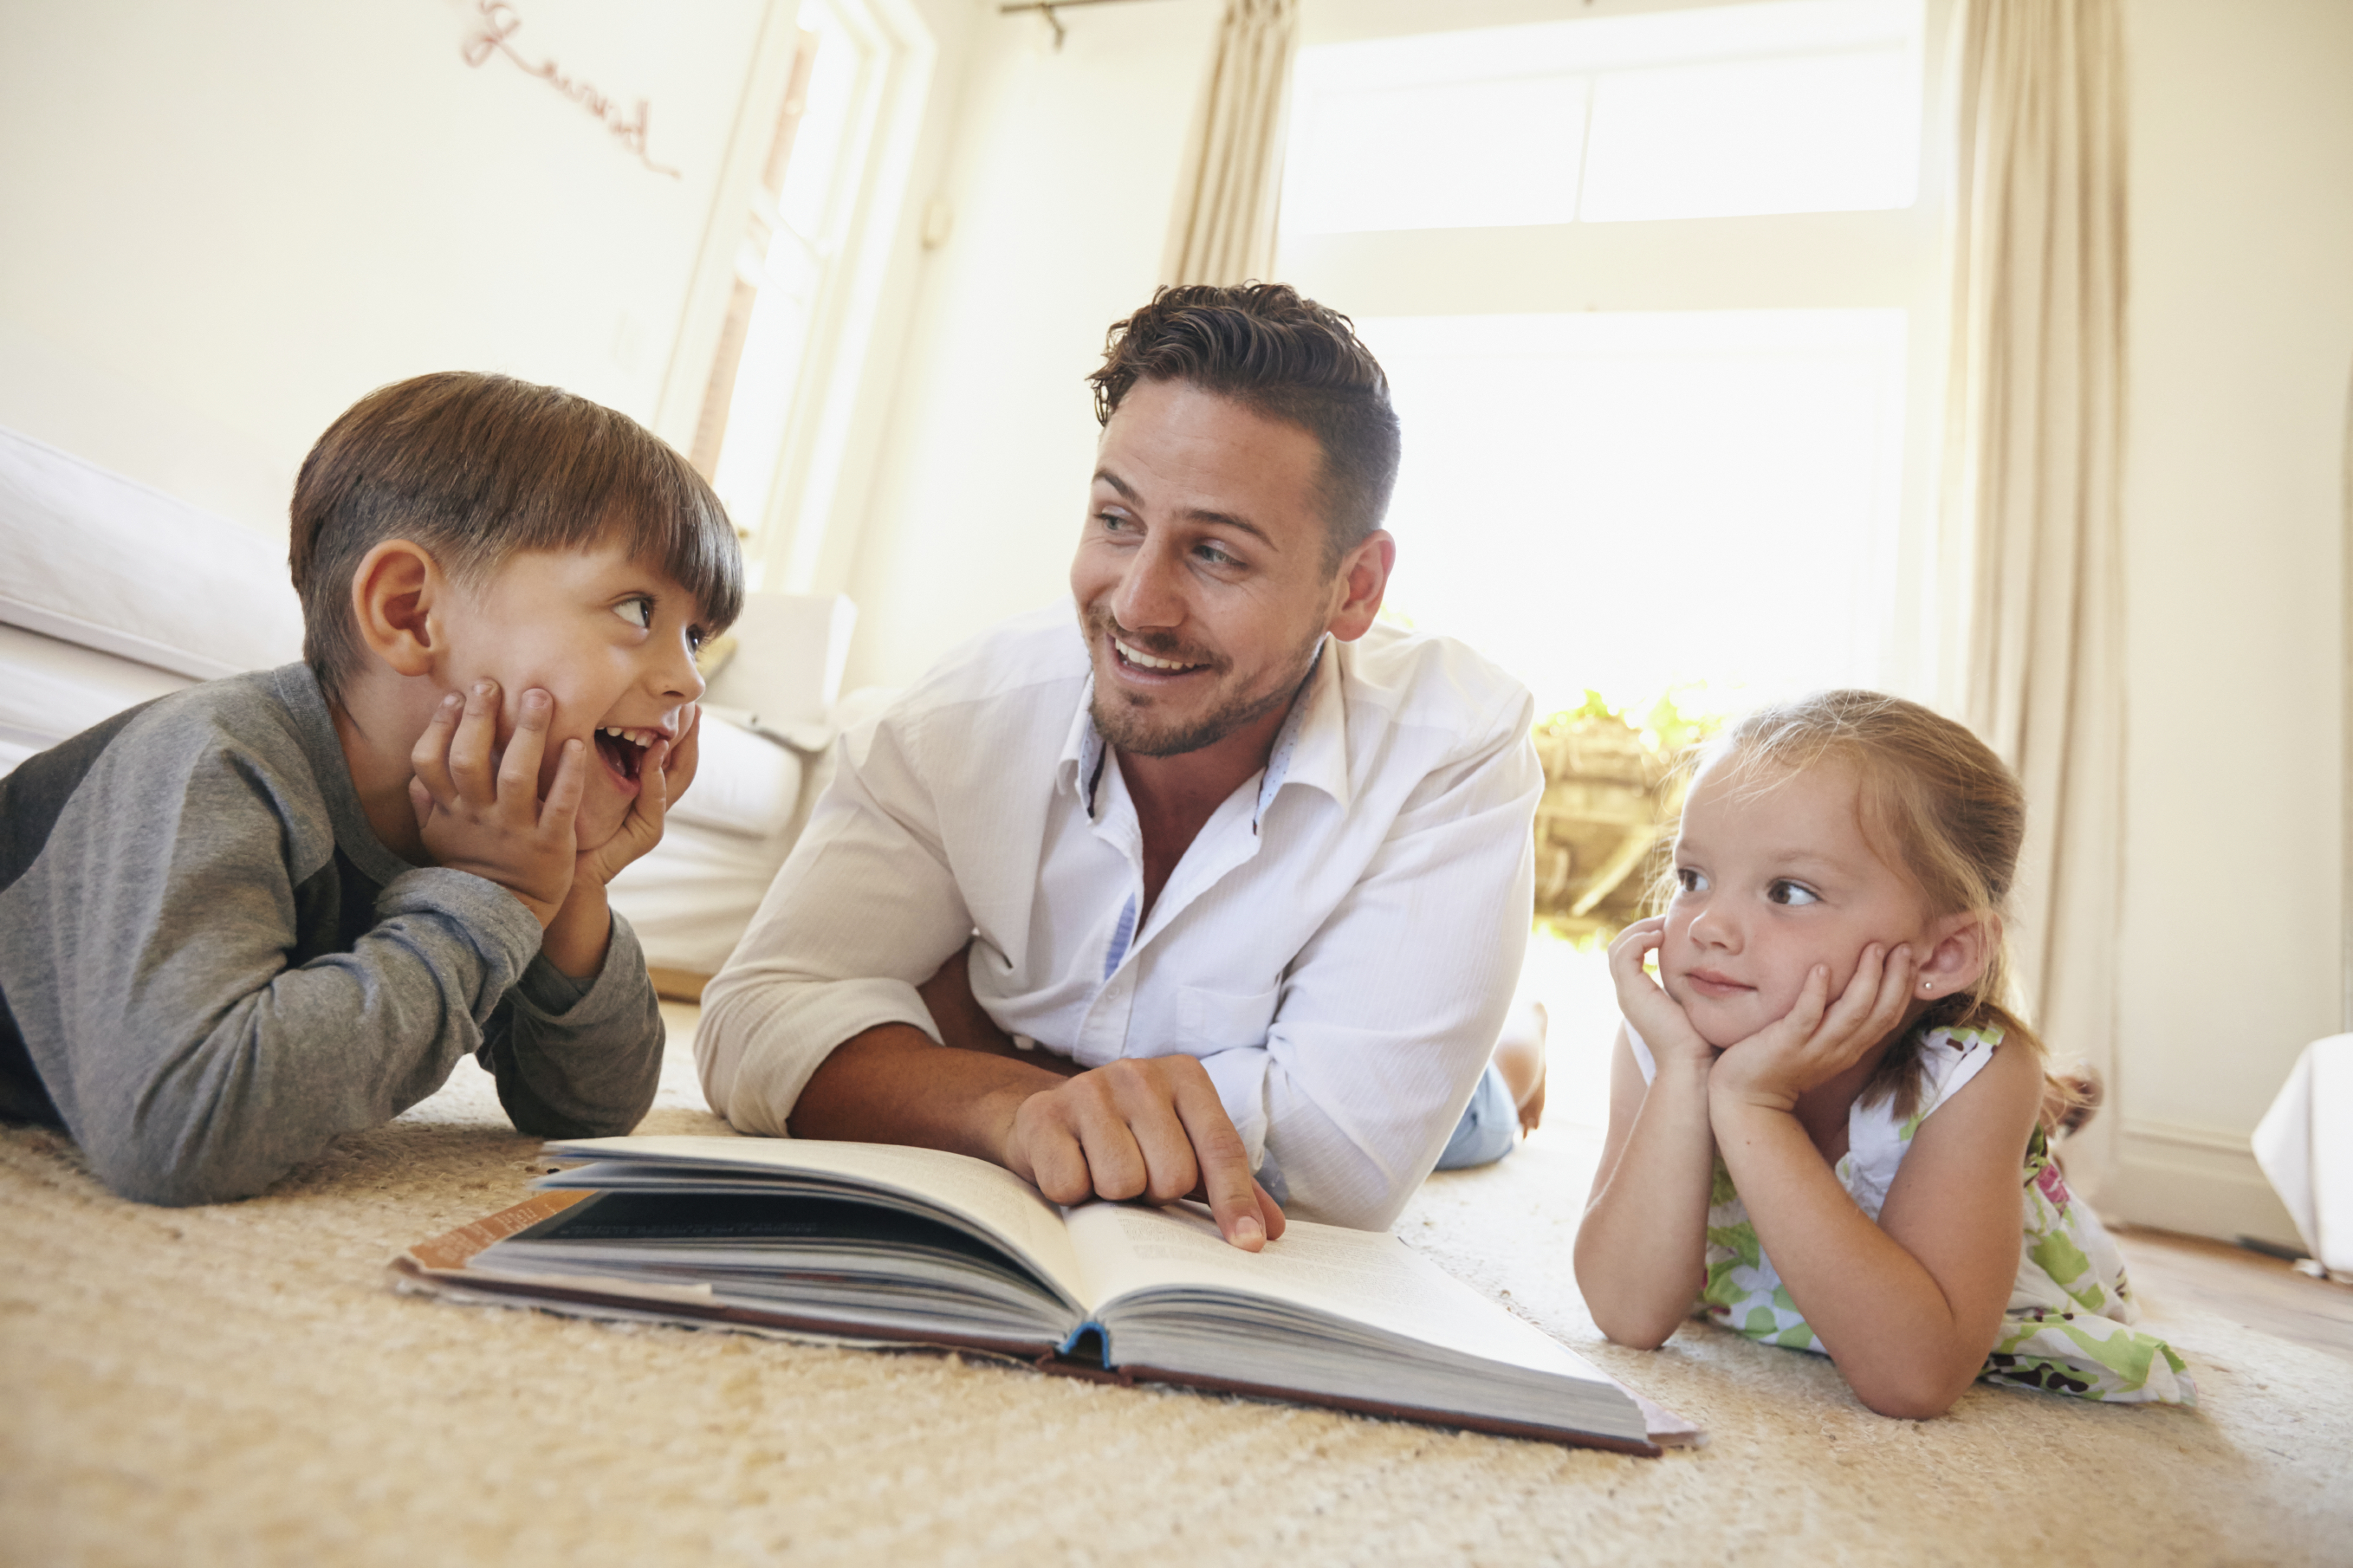 دراسة: مستوى تعليم الآباء يؤثر على دعم الأطفال ثقافيًا